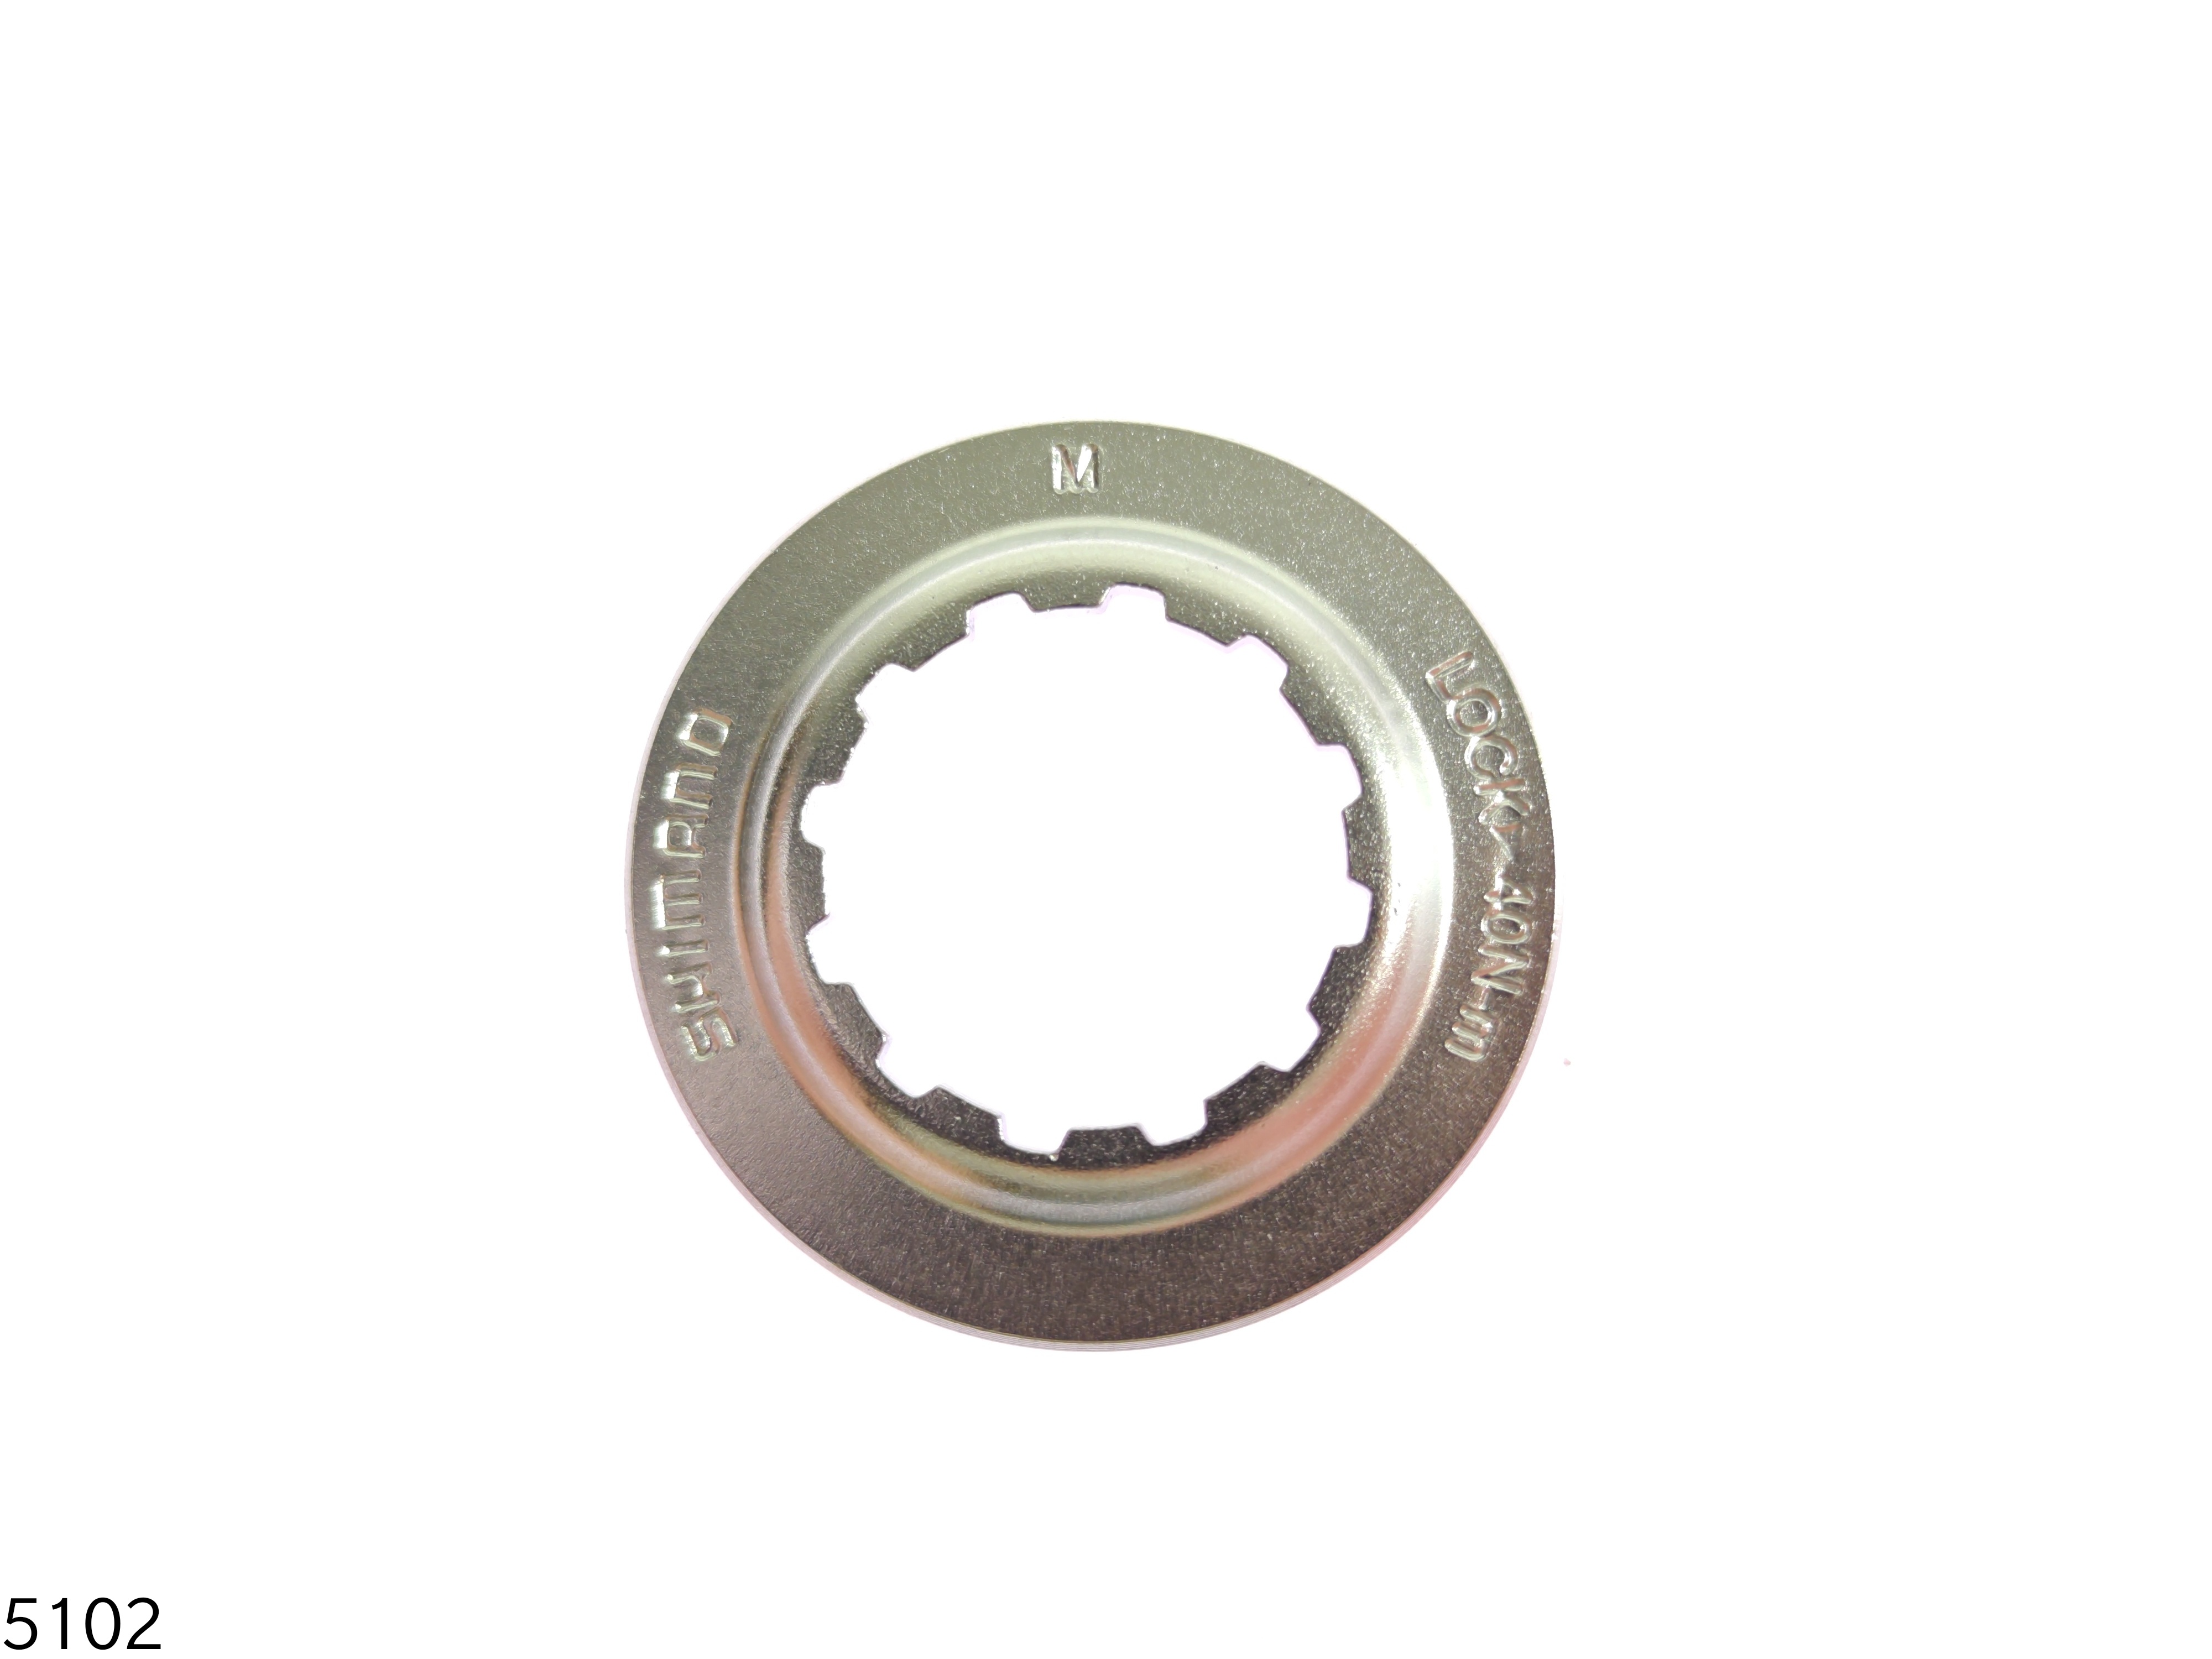 SHIMANO Lockring für Centerlock Bremsscheibe Stahl schwarz Verschluss NEU 